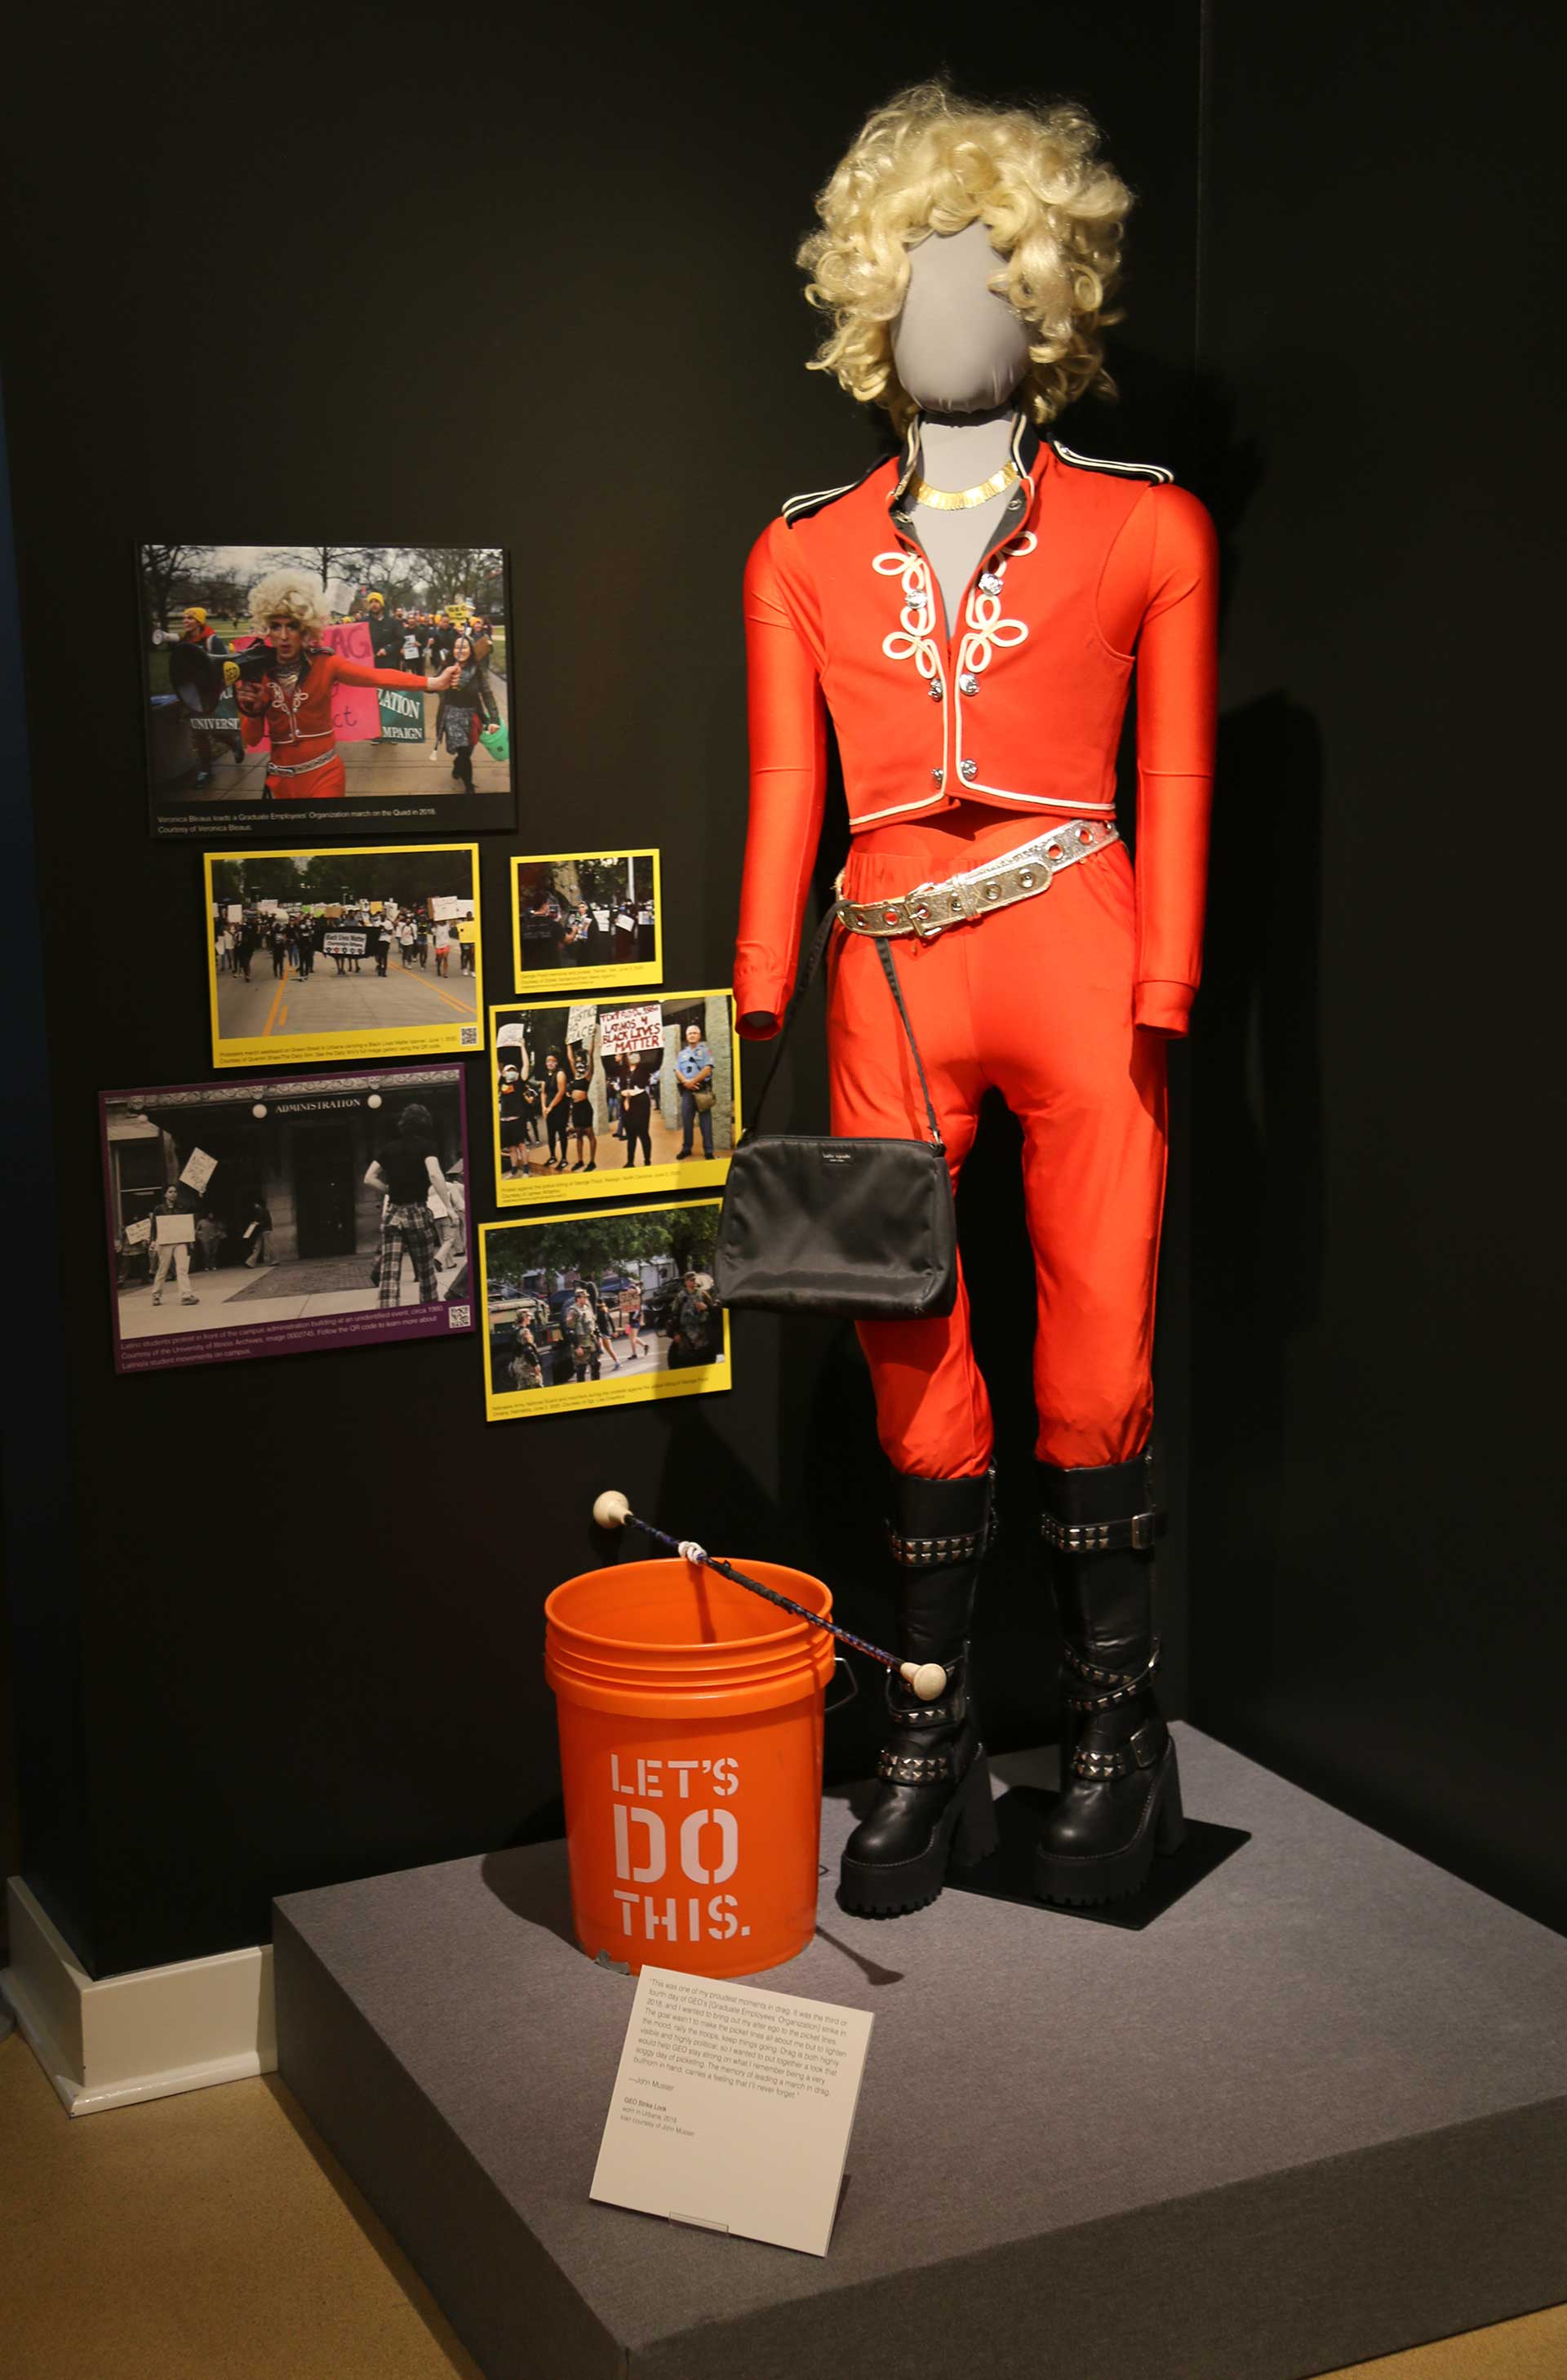 Mannequin in orange uniform